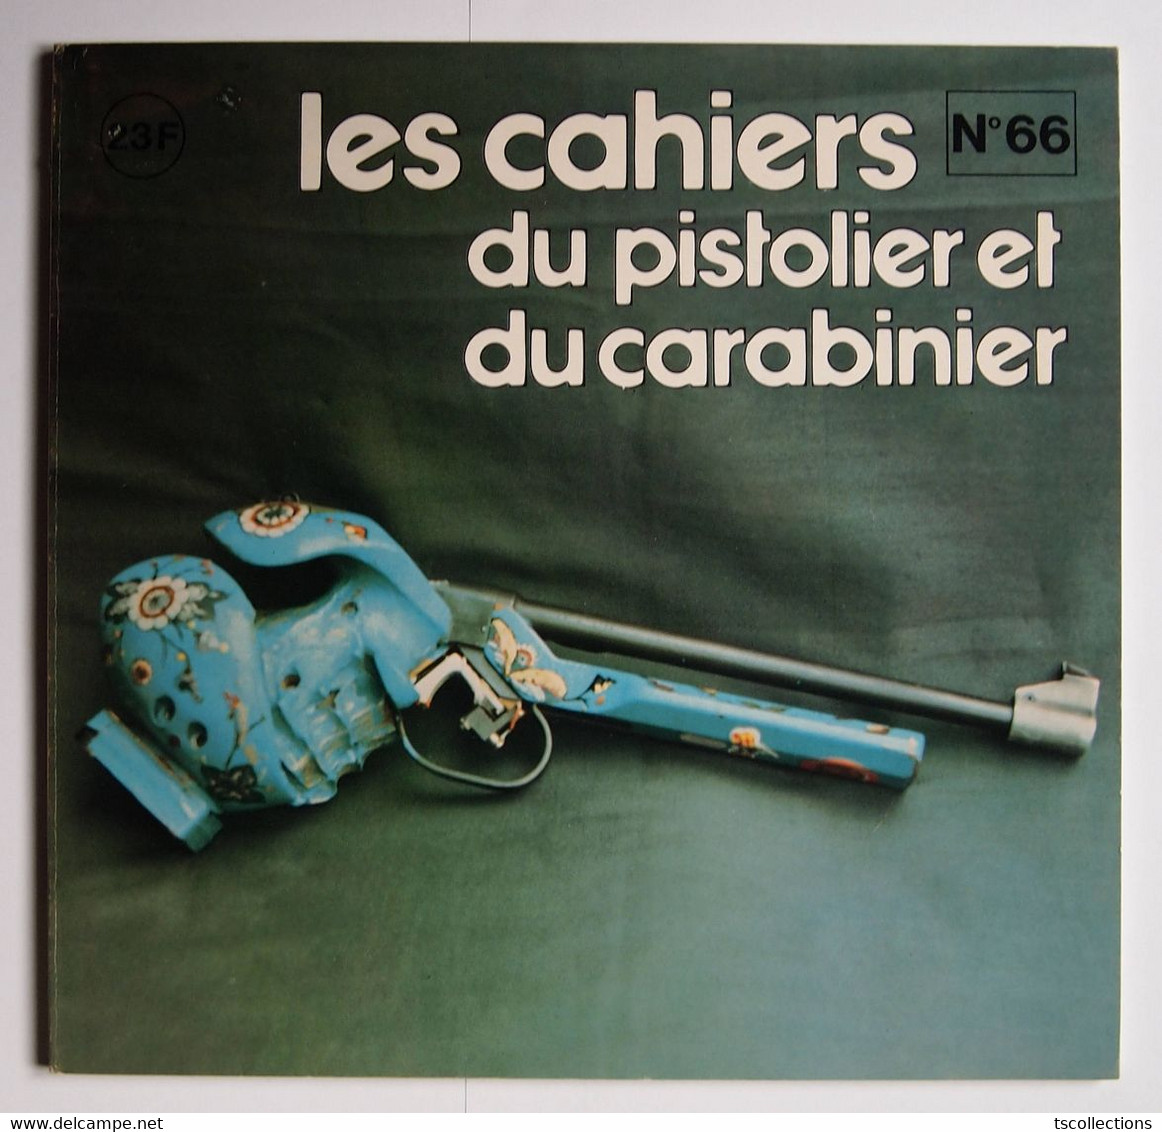 Les Cahiers Du Pistolier Et Du Carabinier Numéro 66 Octobre 1981 - Weapons